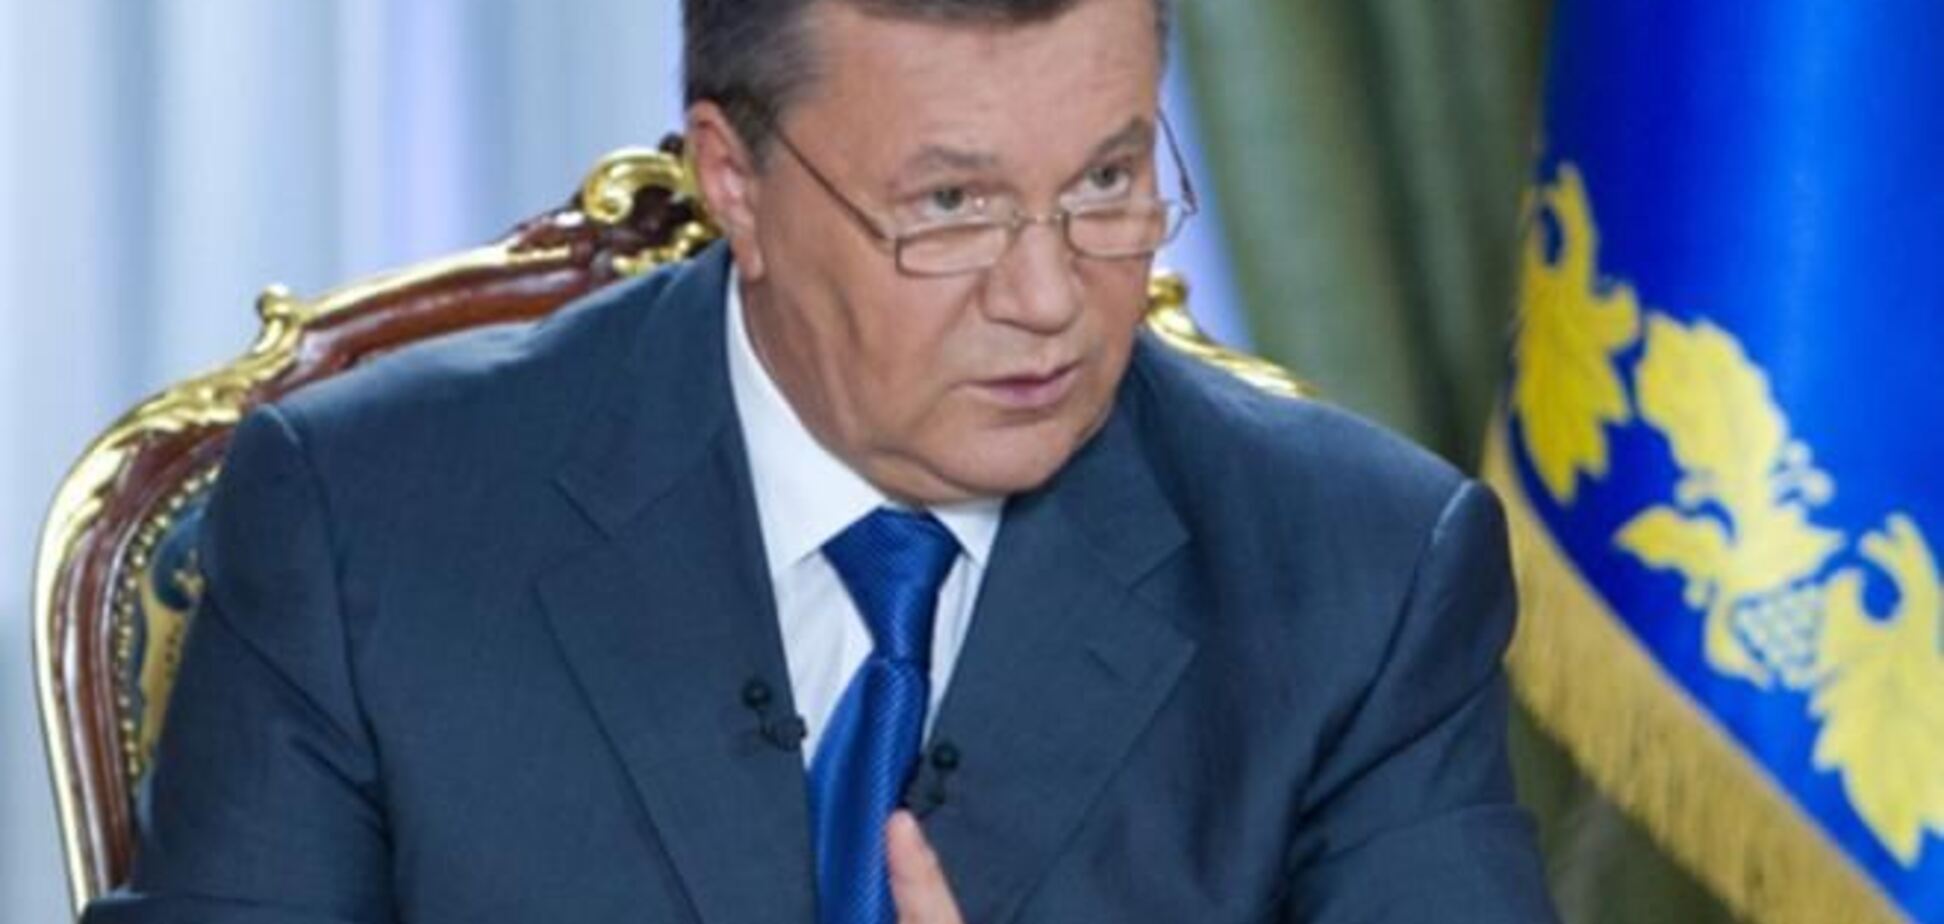 Увечері в п'ятницю українські телеканали покажуть інтерв'ю Януковича